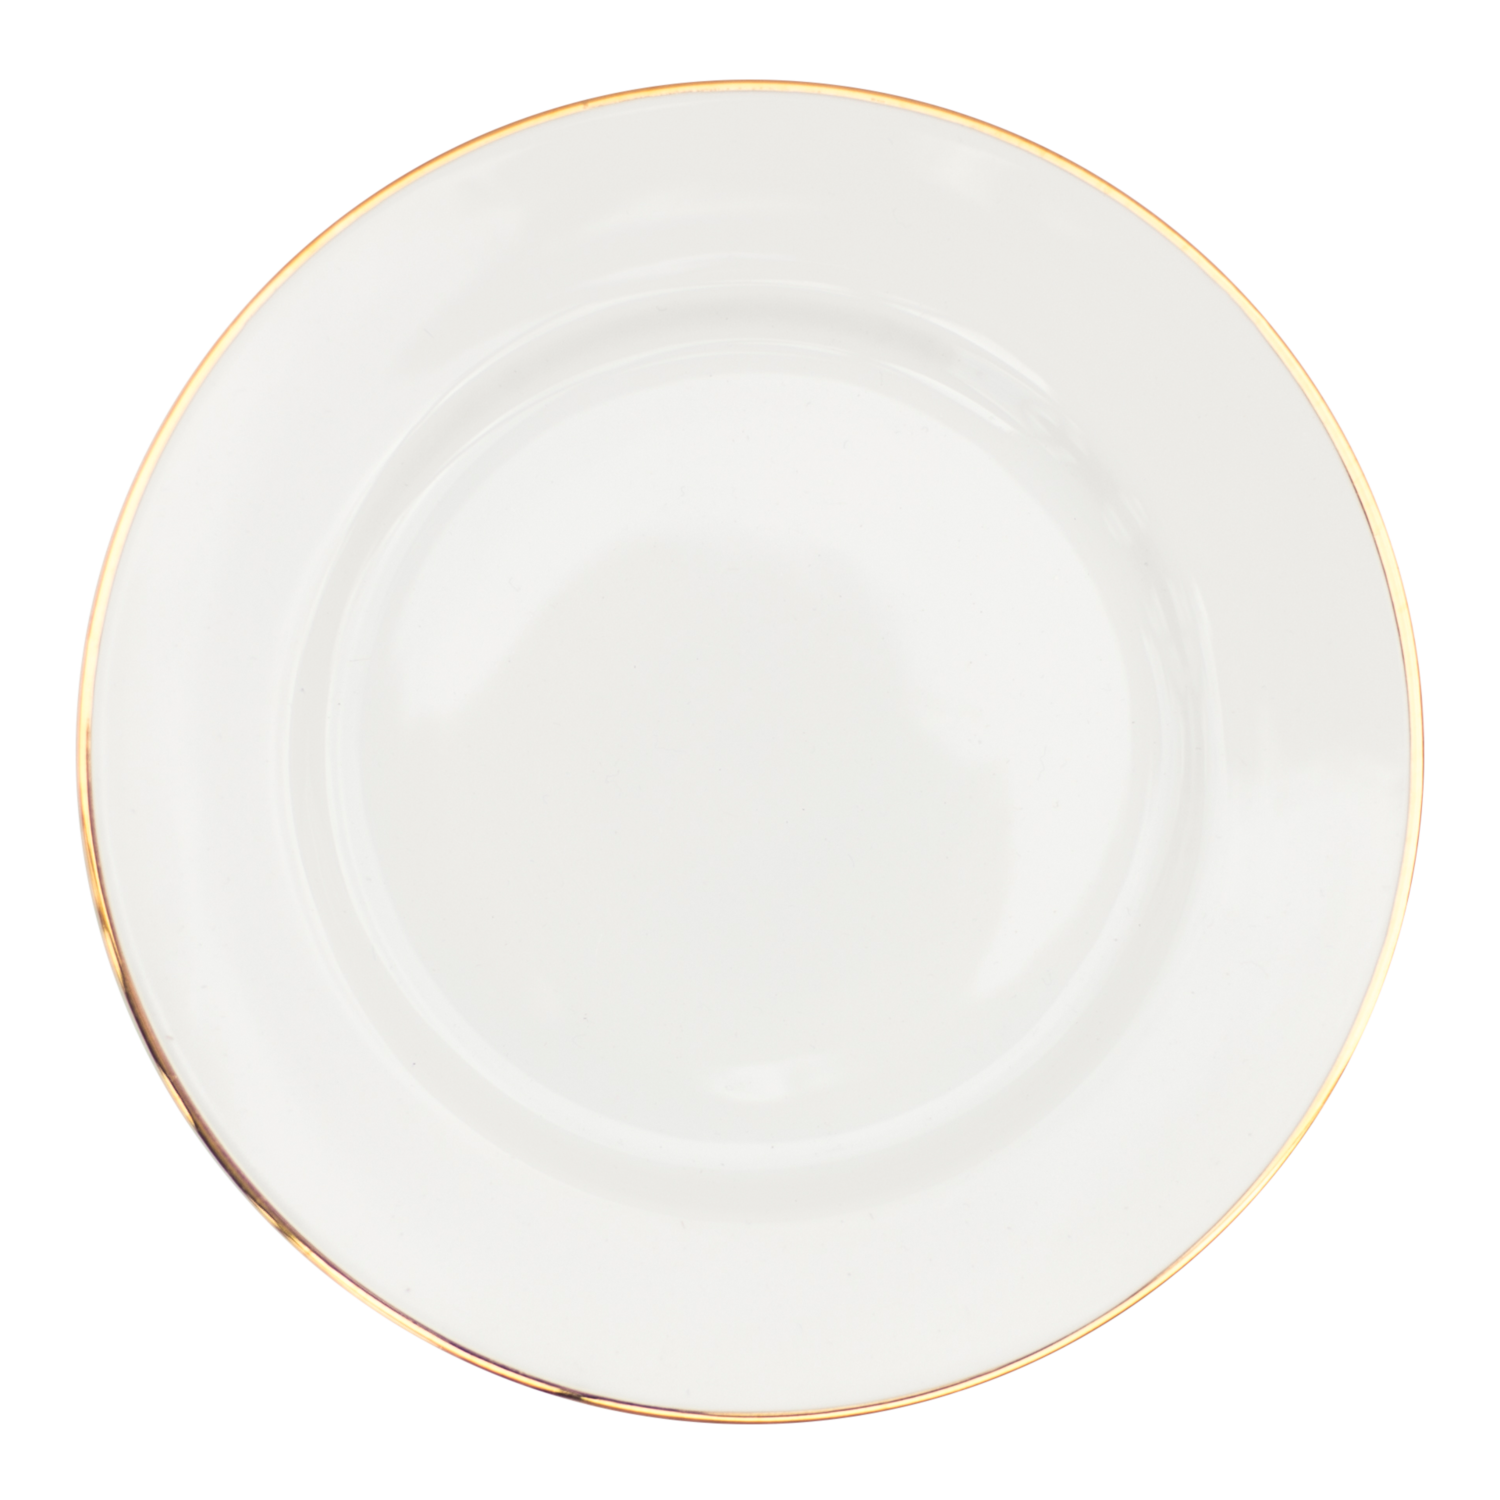 Piring makan putih PNG Pic